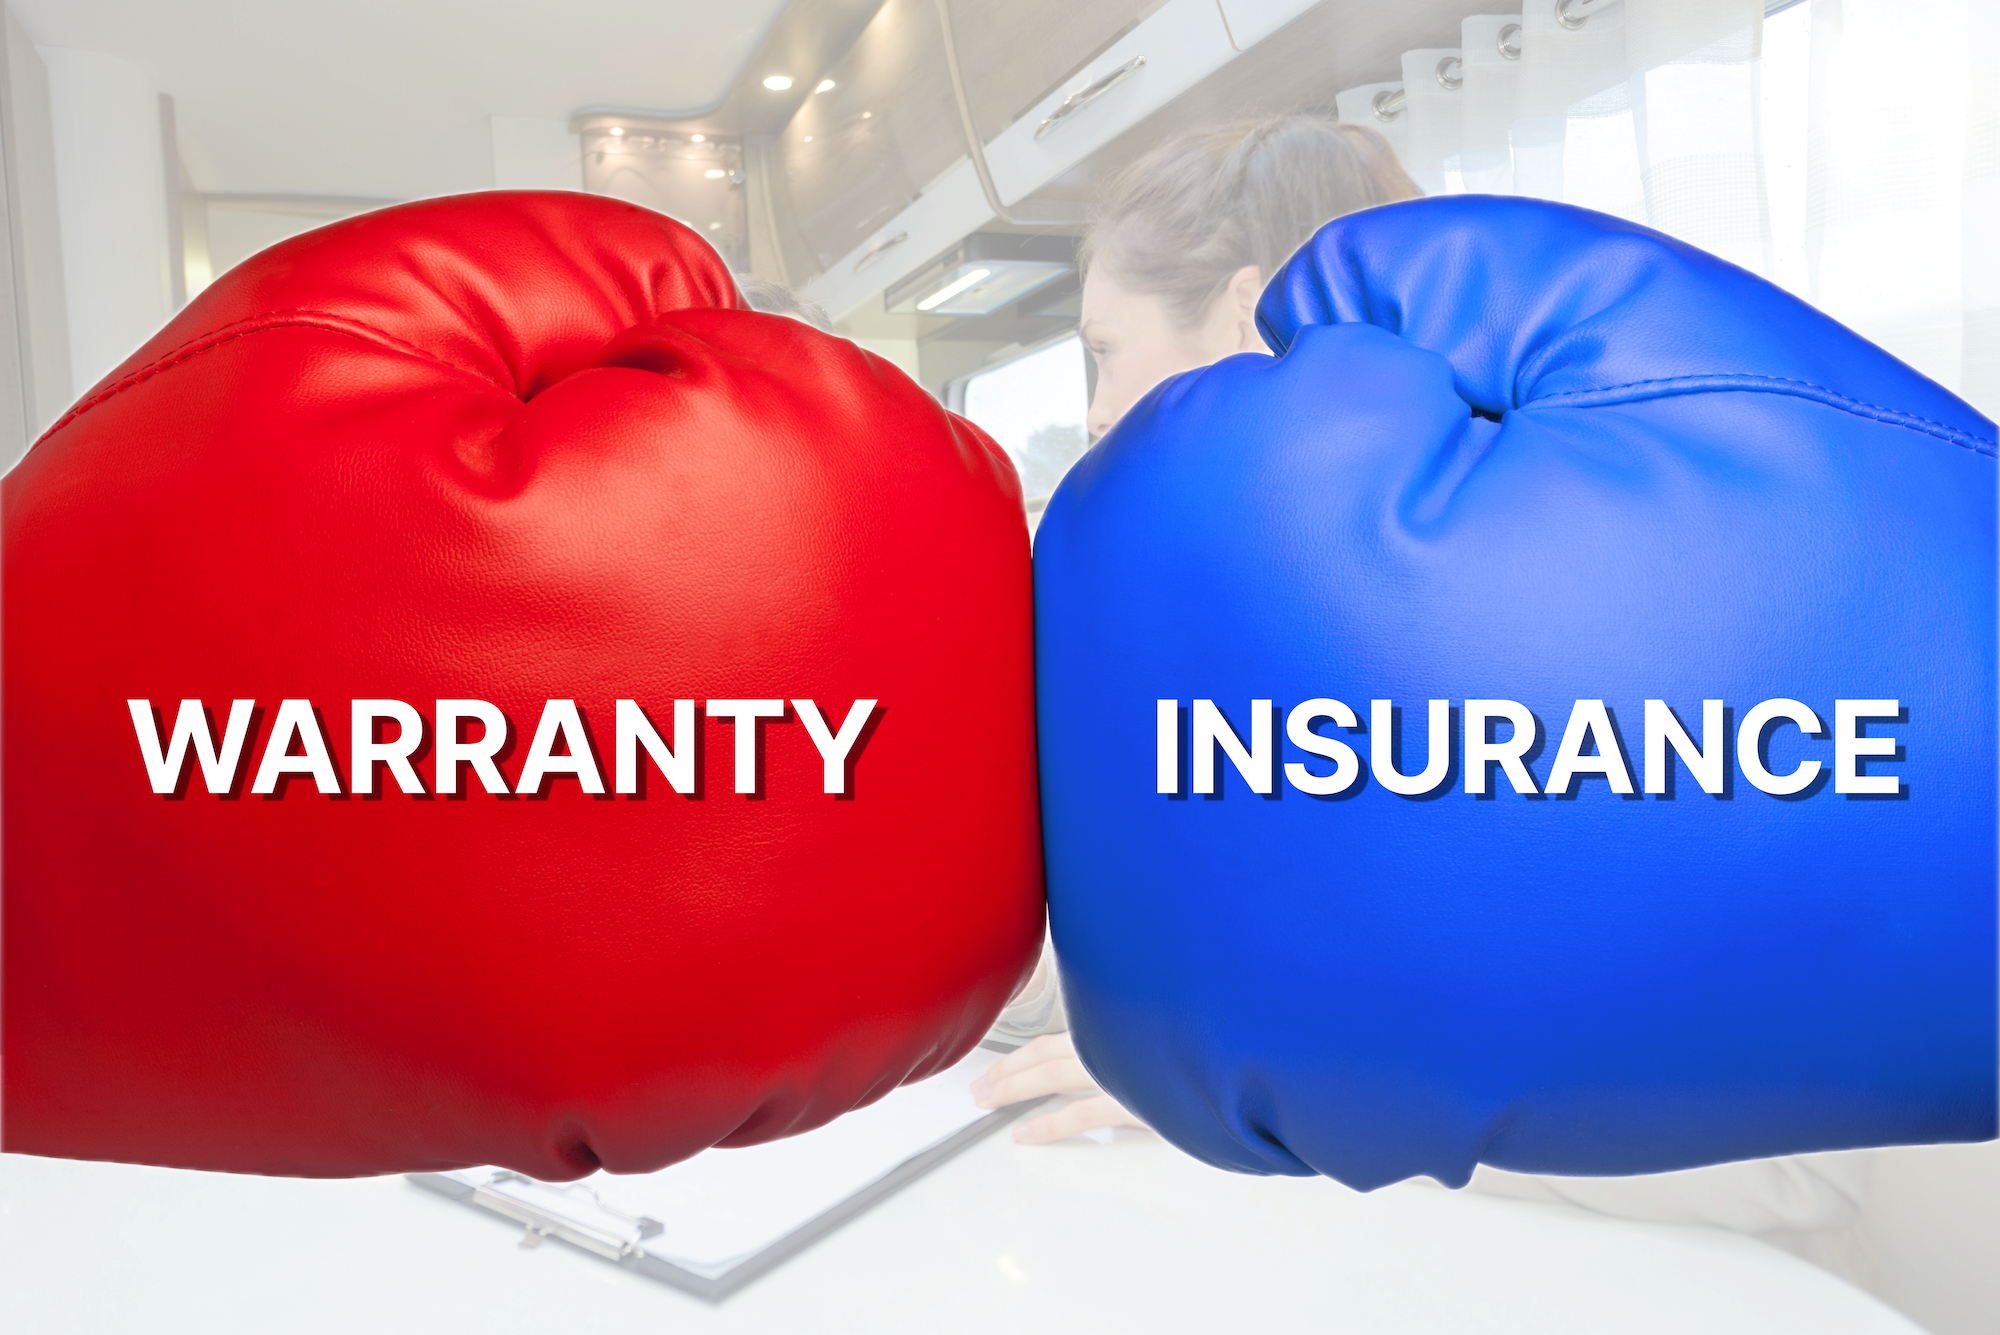 RV Education: Extended Warranties vs Insurance